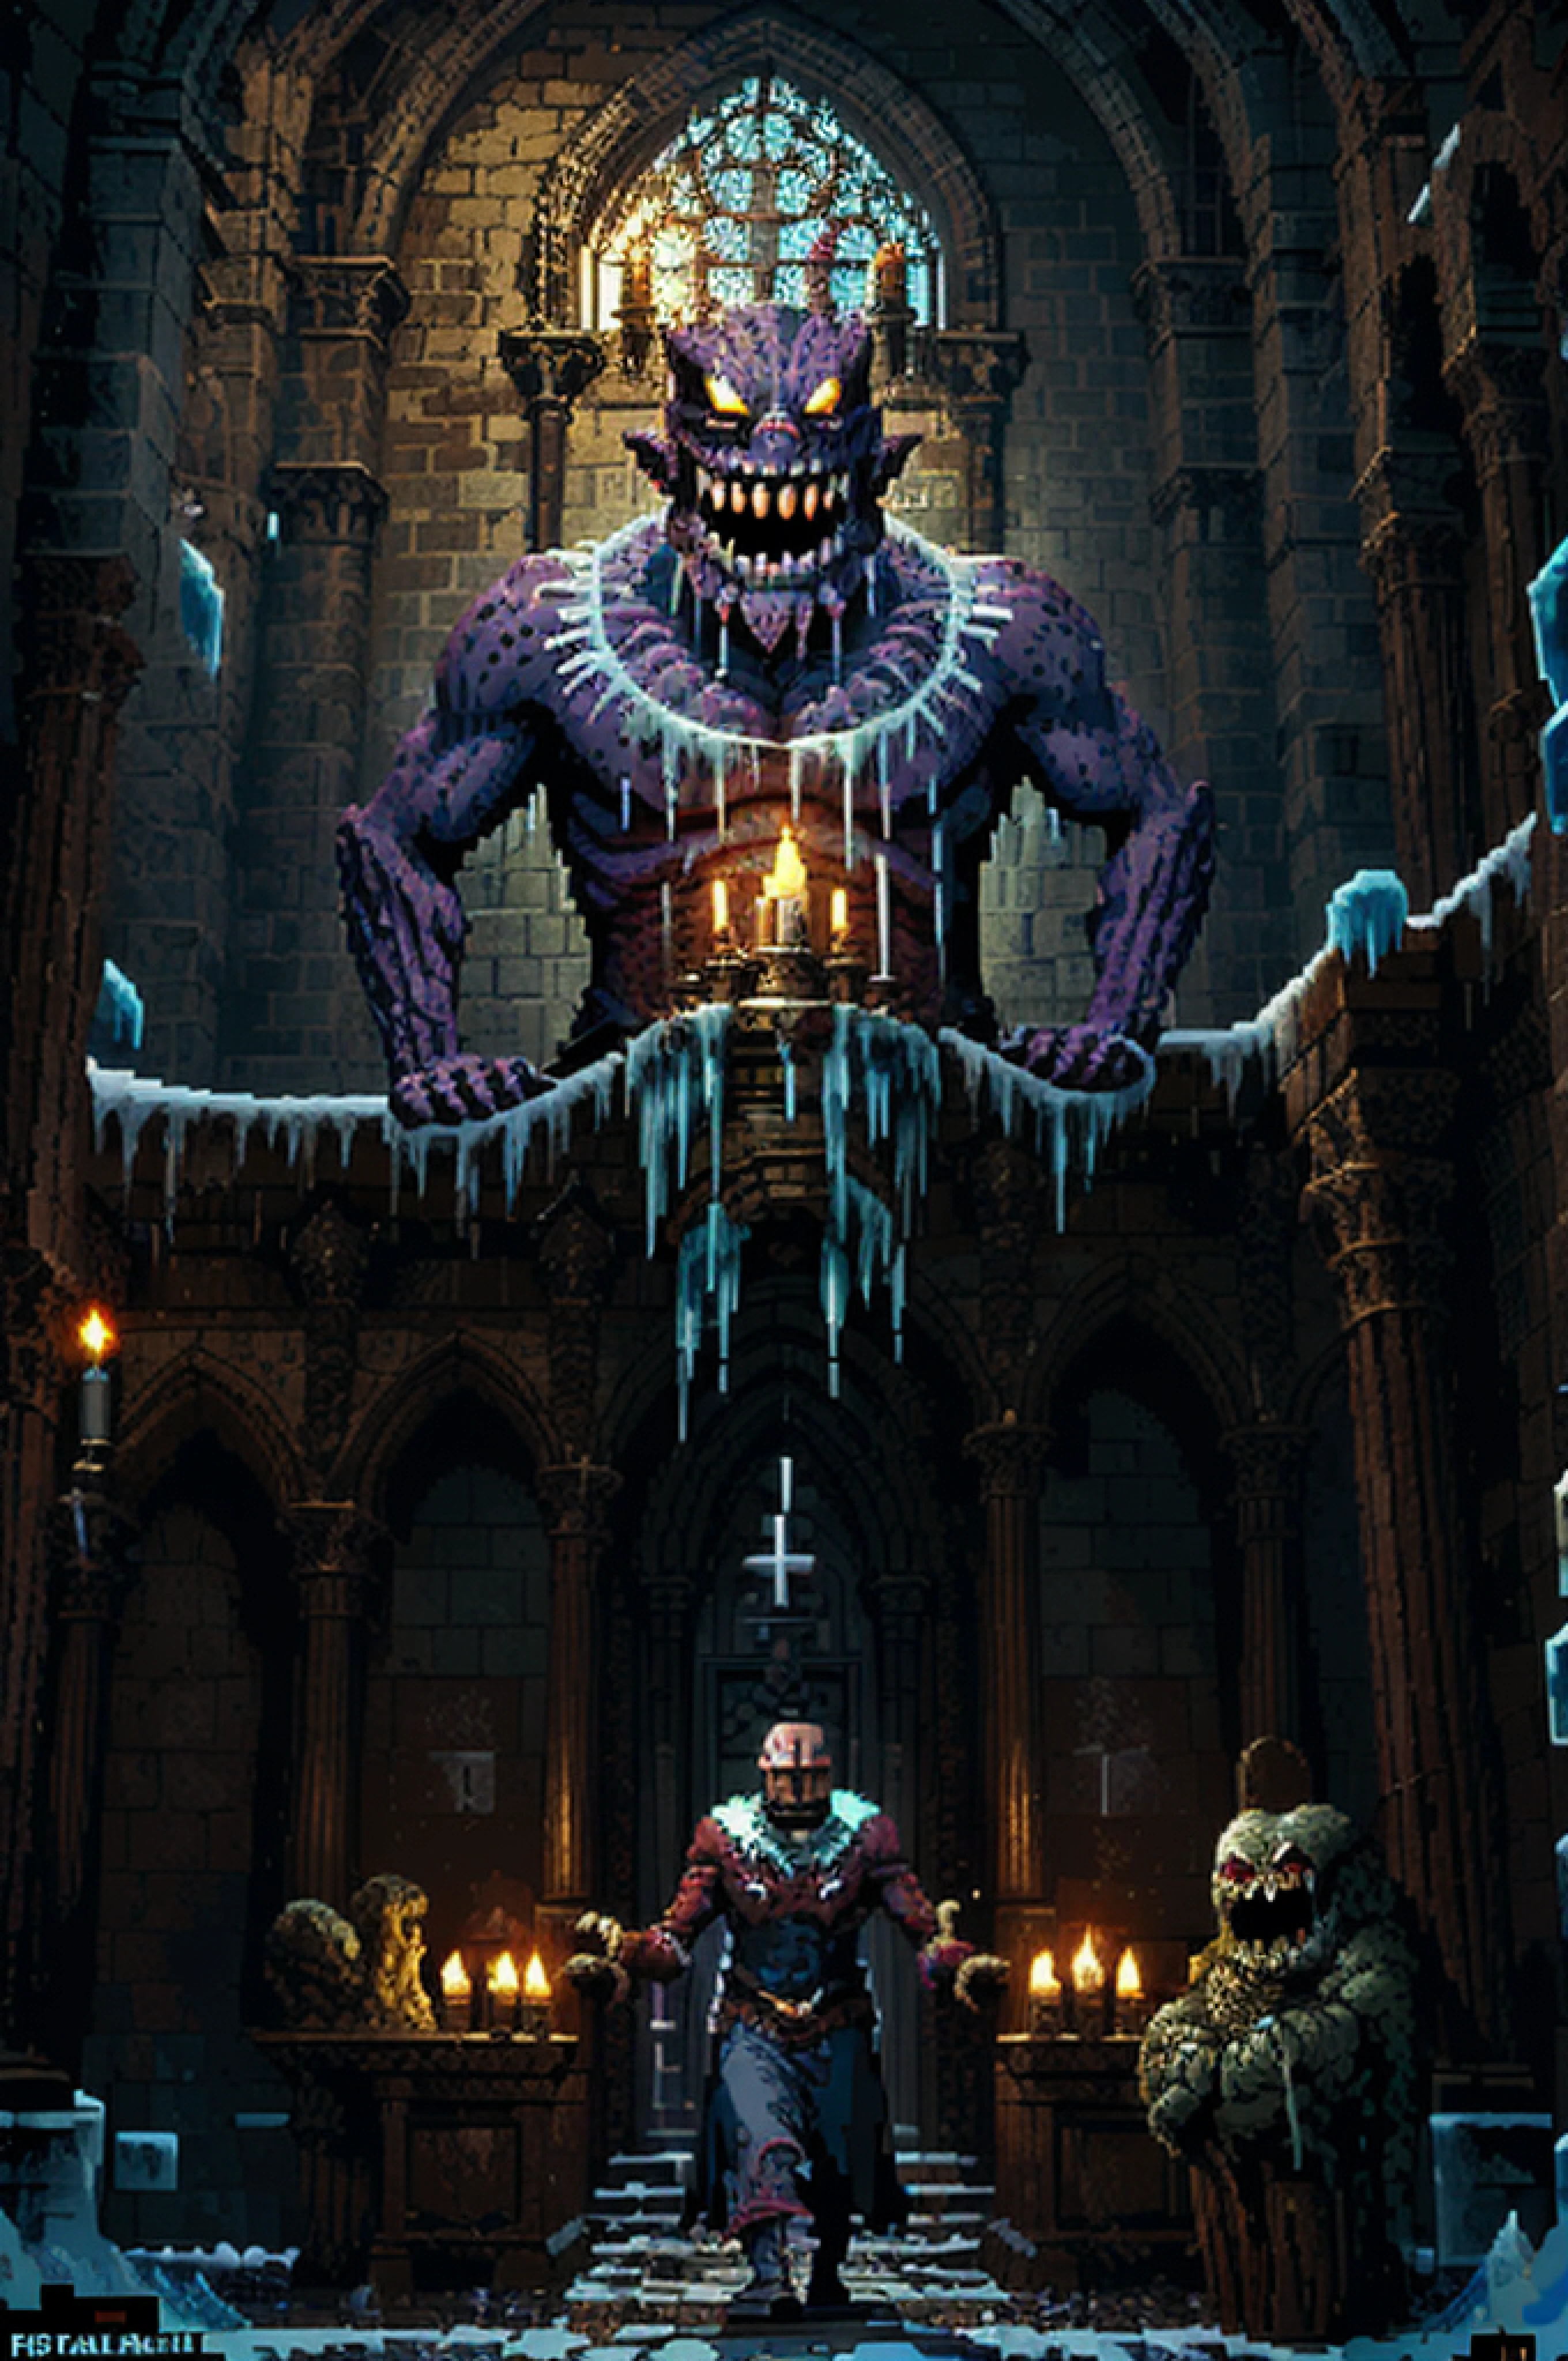 (arte de pixel:1.6), batalla épica contra el jefe (criatura horrible grito de hielo, múltiples ojos, sonrisa siniestra:1.2), dentro de una catedral gótica, luz de las velas